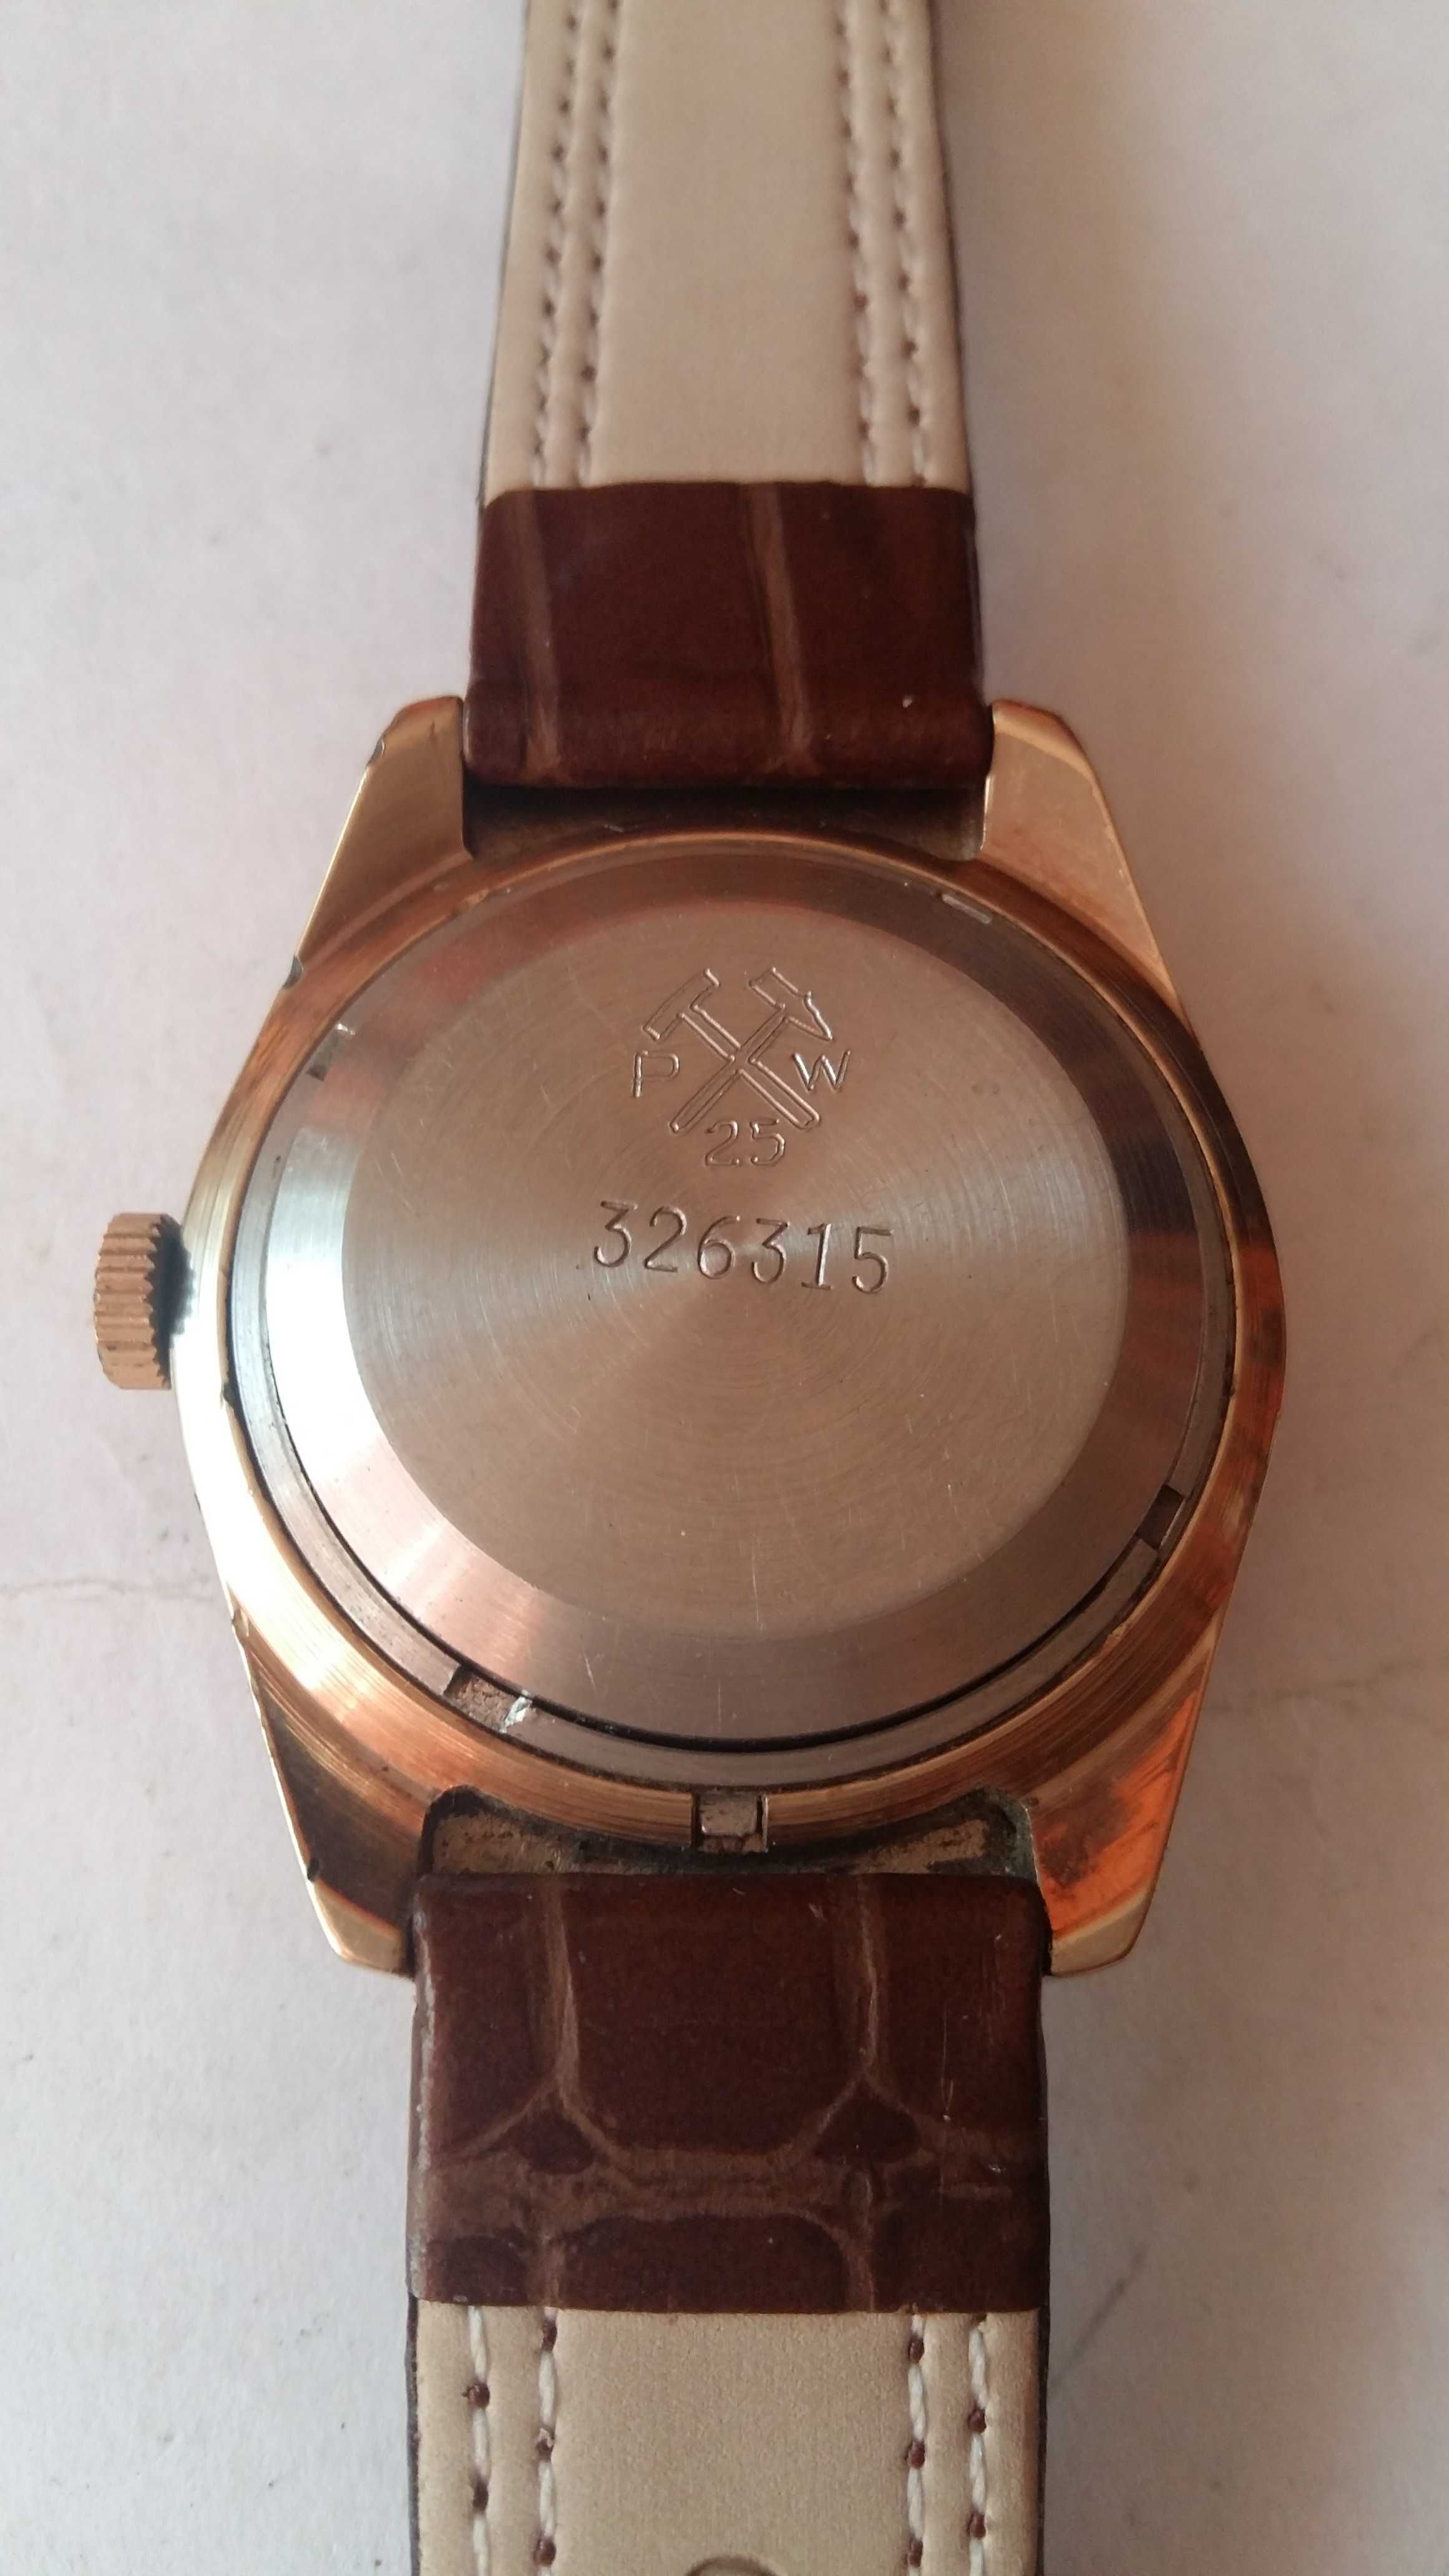 Zegarek Poljot Automat 37 mm bk. pozłacany.